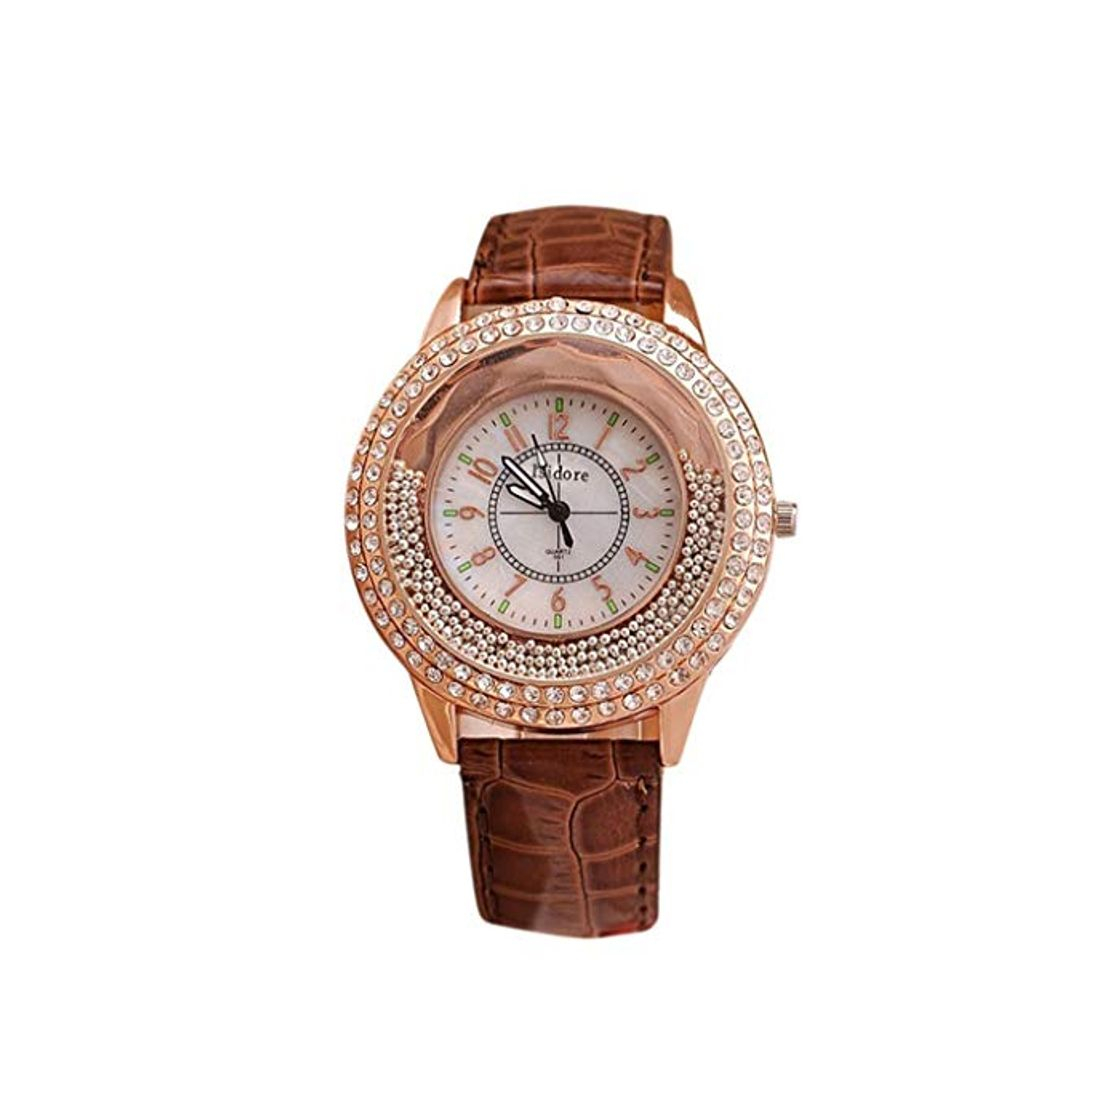 Runer Mulheres Strass relógio de luxo de Couro da Marca Relógios Femininos